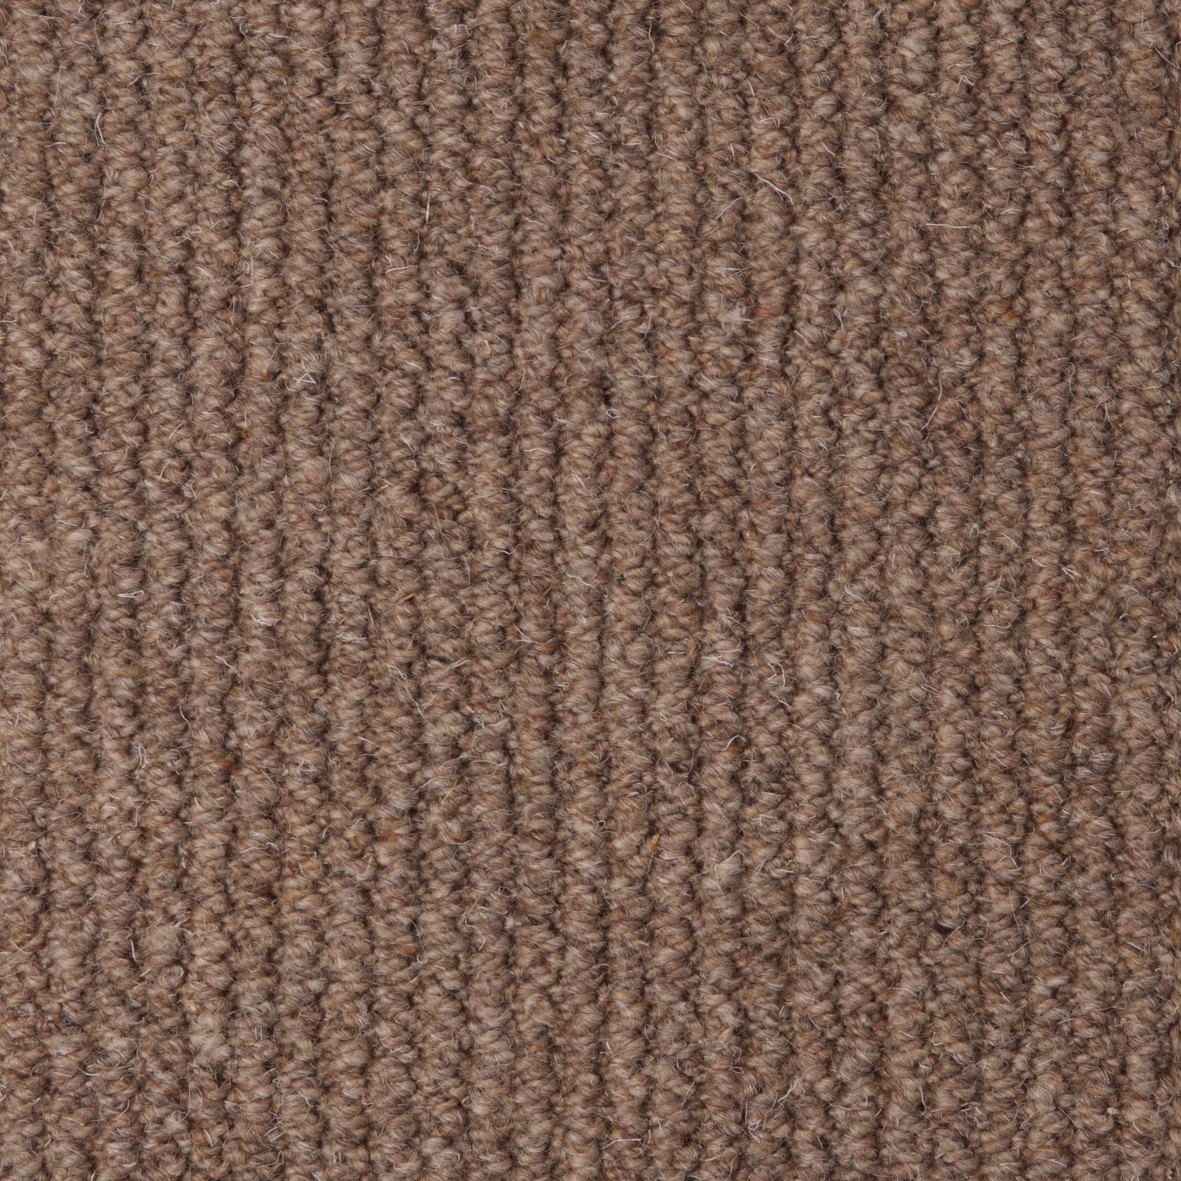 Rolling Hills Pure Wool Loop Carpet - Burleywood